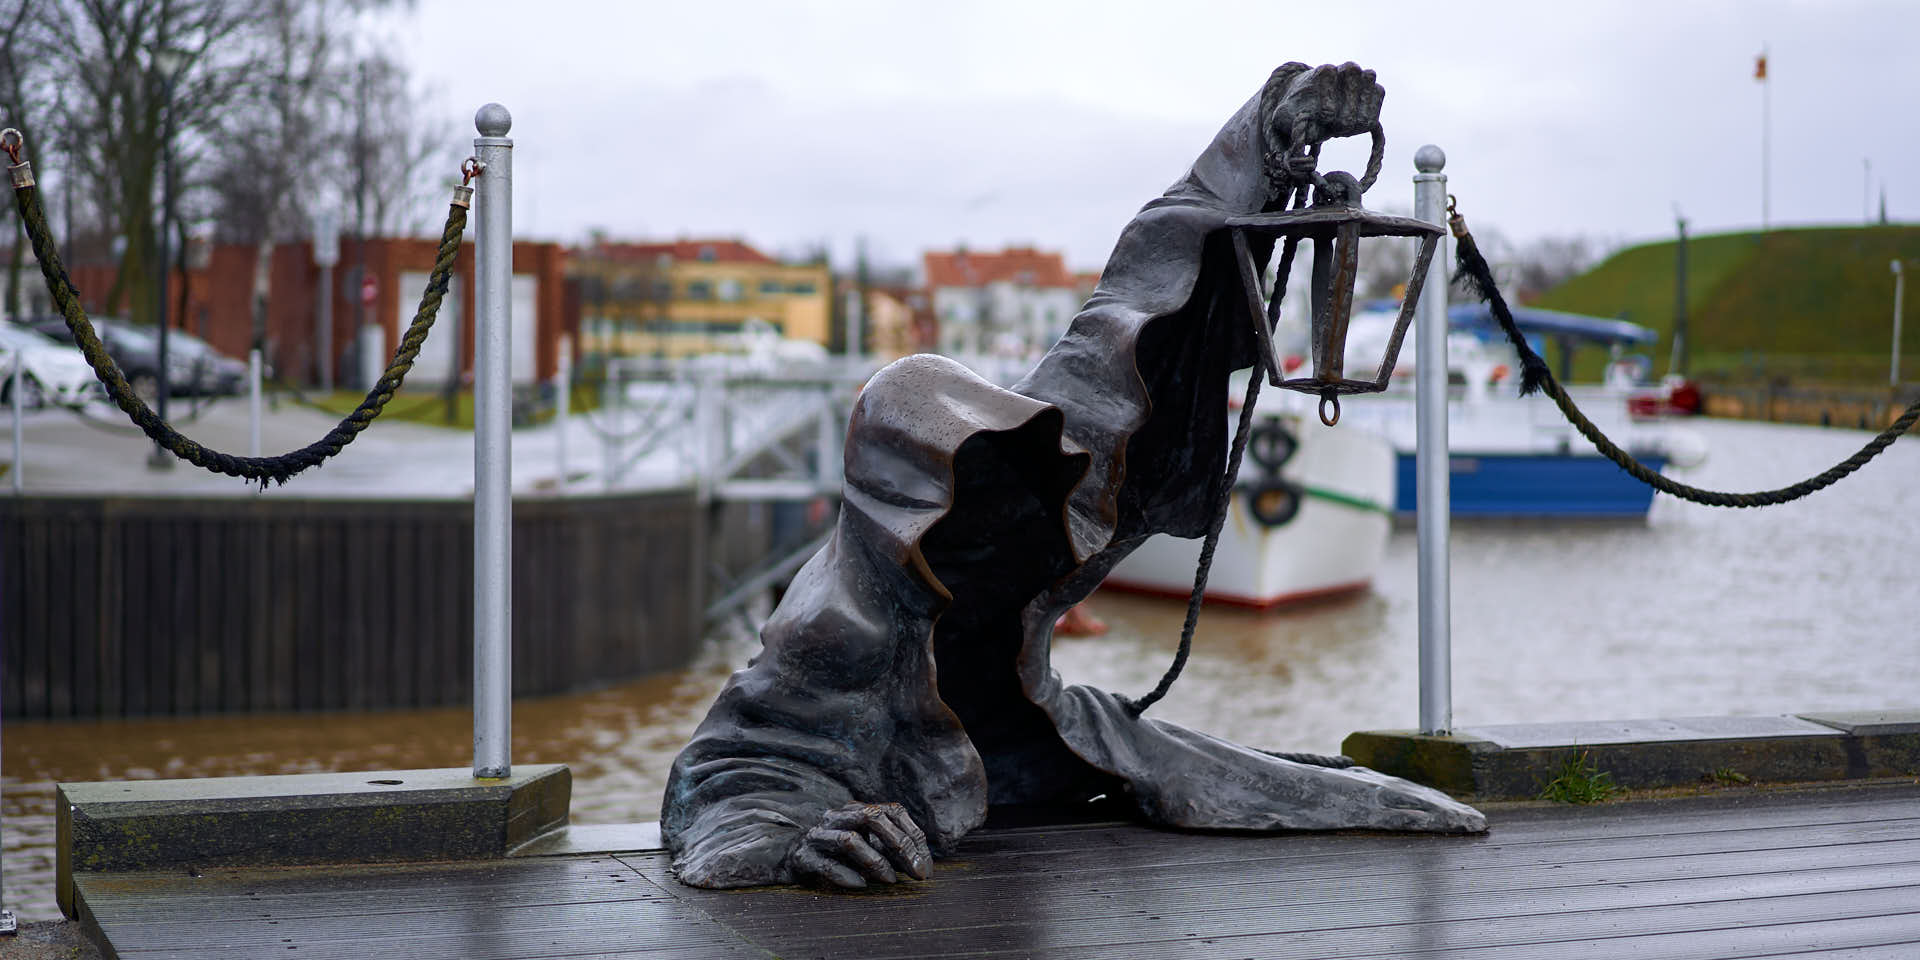 Klaipeda Black Ghost Statue